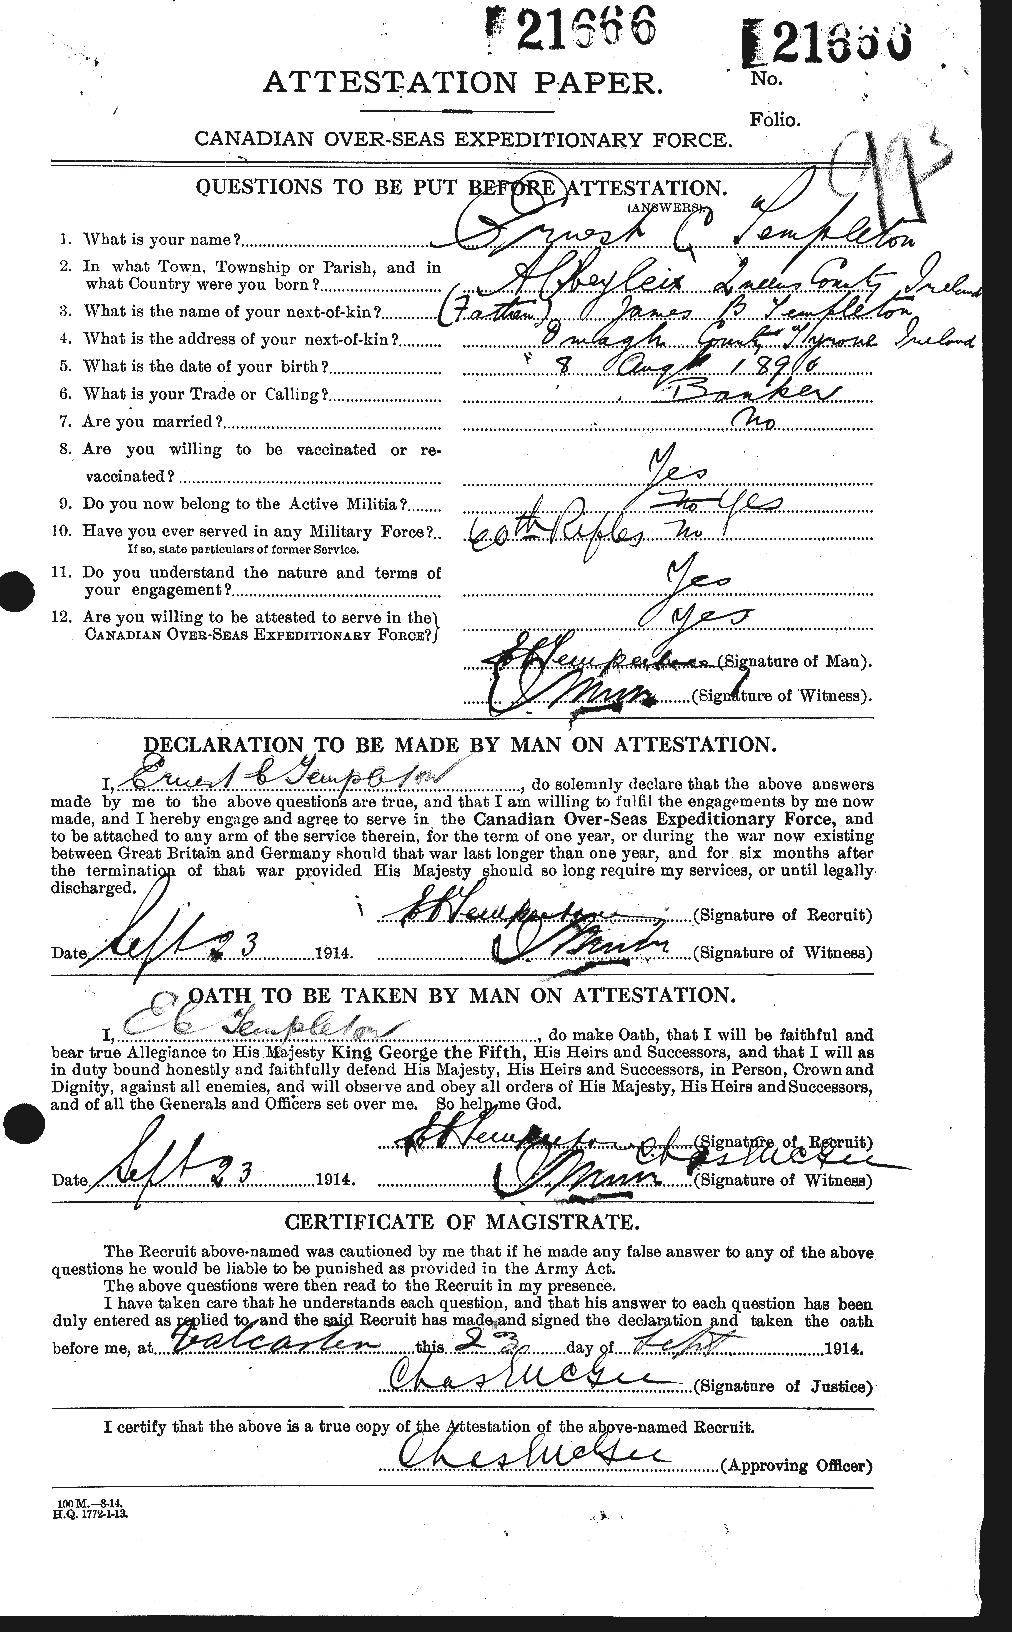 Dossiers du Personnel de la Première Guerre mondiale - CEC 629149a